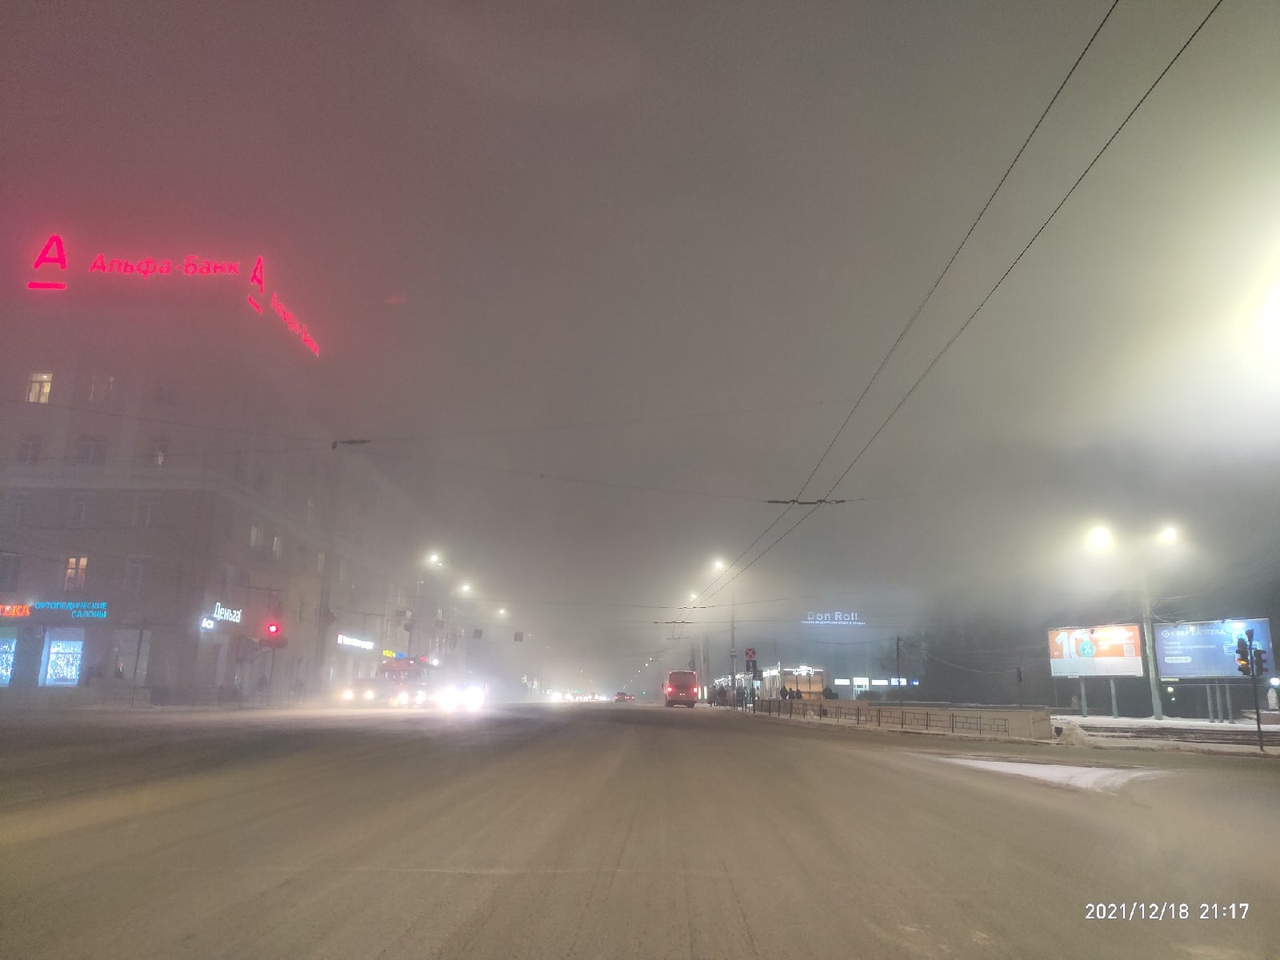 Омичи делятся завораживающими снимками тумана, окутавшего город #Омск #Общество #Сегодня